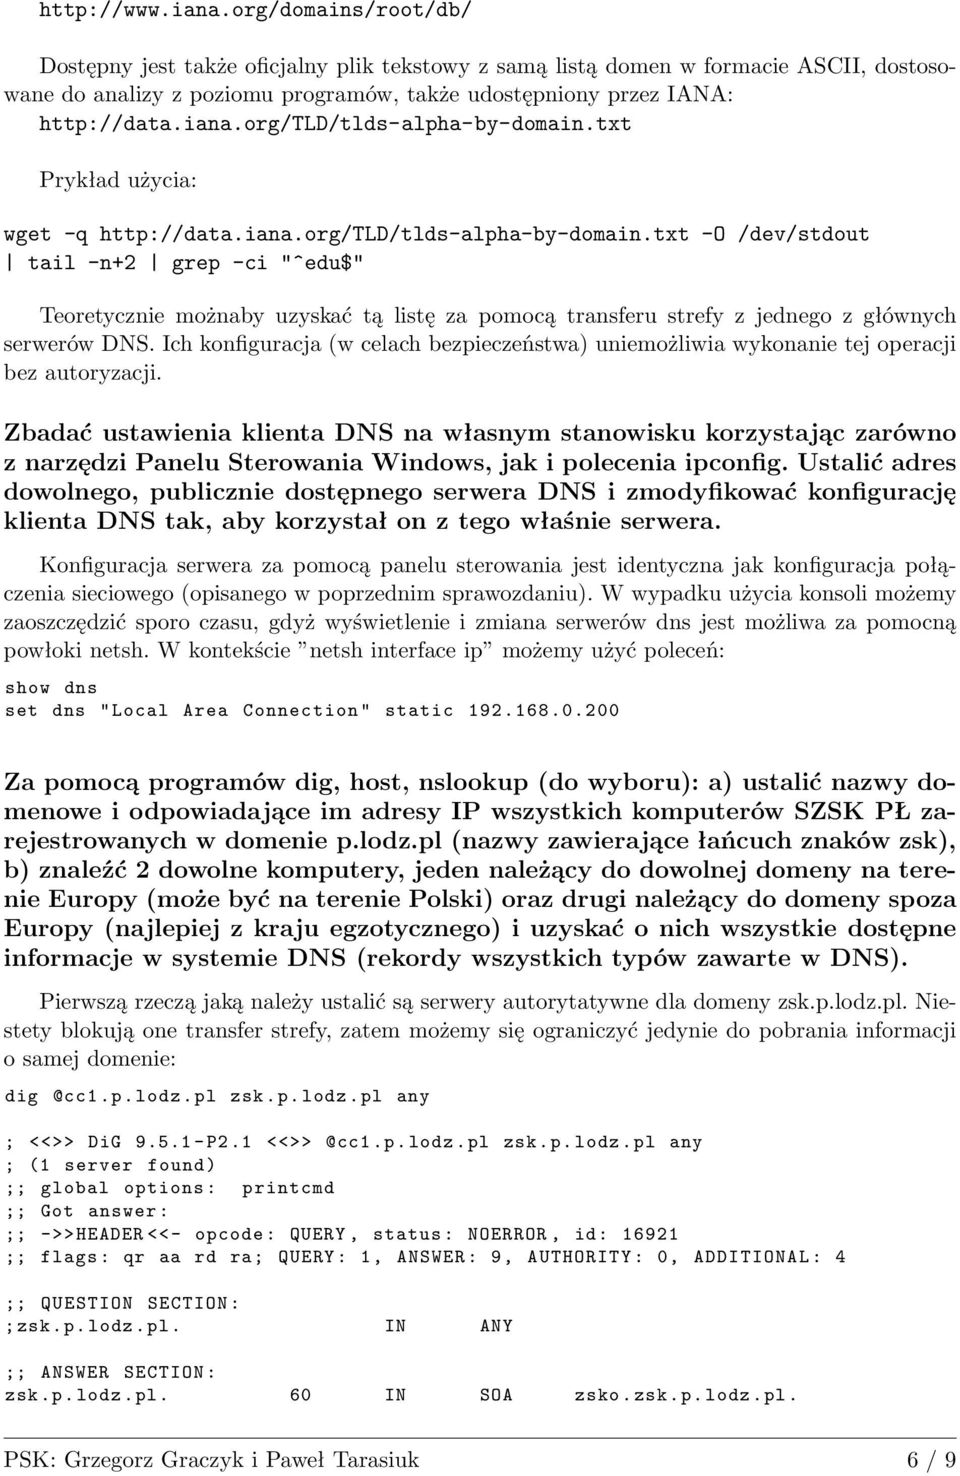 org/tld/tlds-alpha-by-domain.txt Prykład użycia: wget -q http://data.iana.org/tld/tlds-alpha-by-domain.txt -O /dev/stdout tail -n+2 grep -ci "^edu$" Teoretycznie możnaby uzyskać tą listę za pomocą transferu strefy z jednego z głównych serwerów DNS.